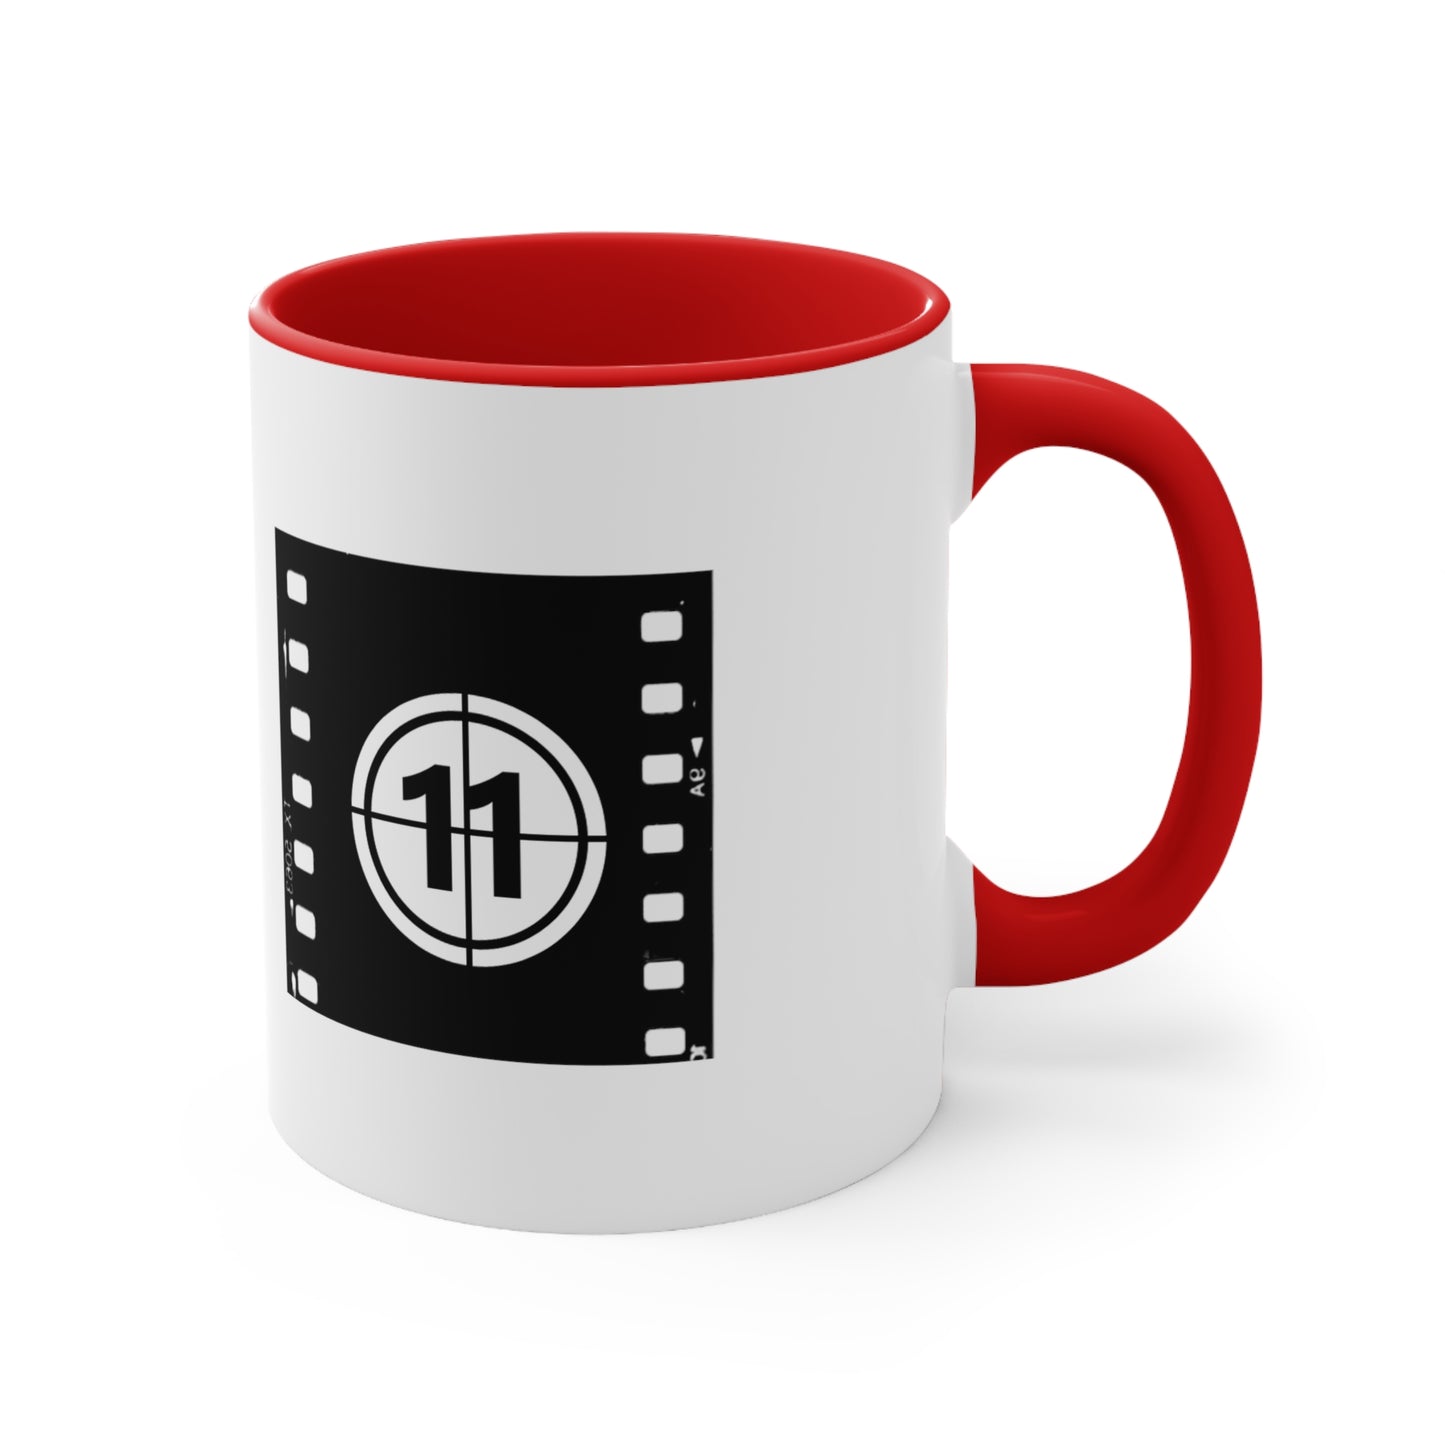 Film At 11 Coffee Mug